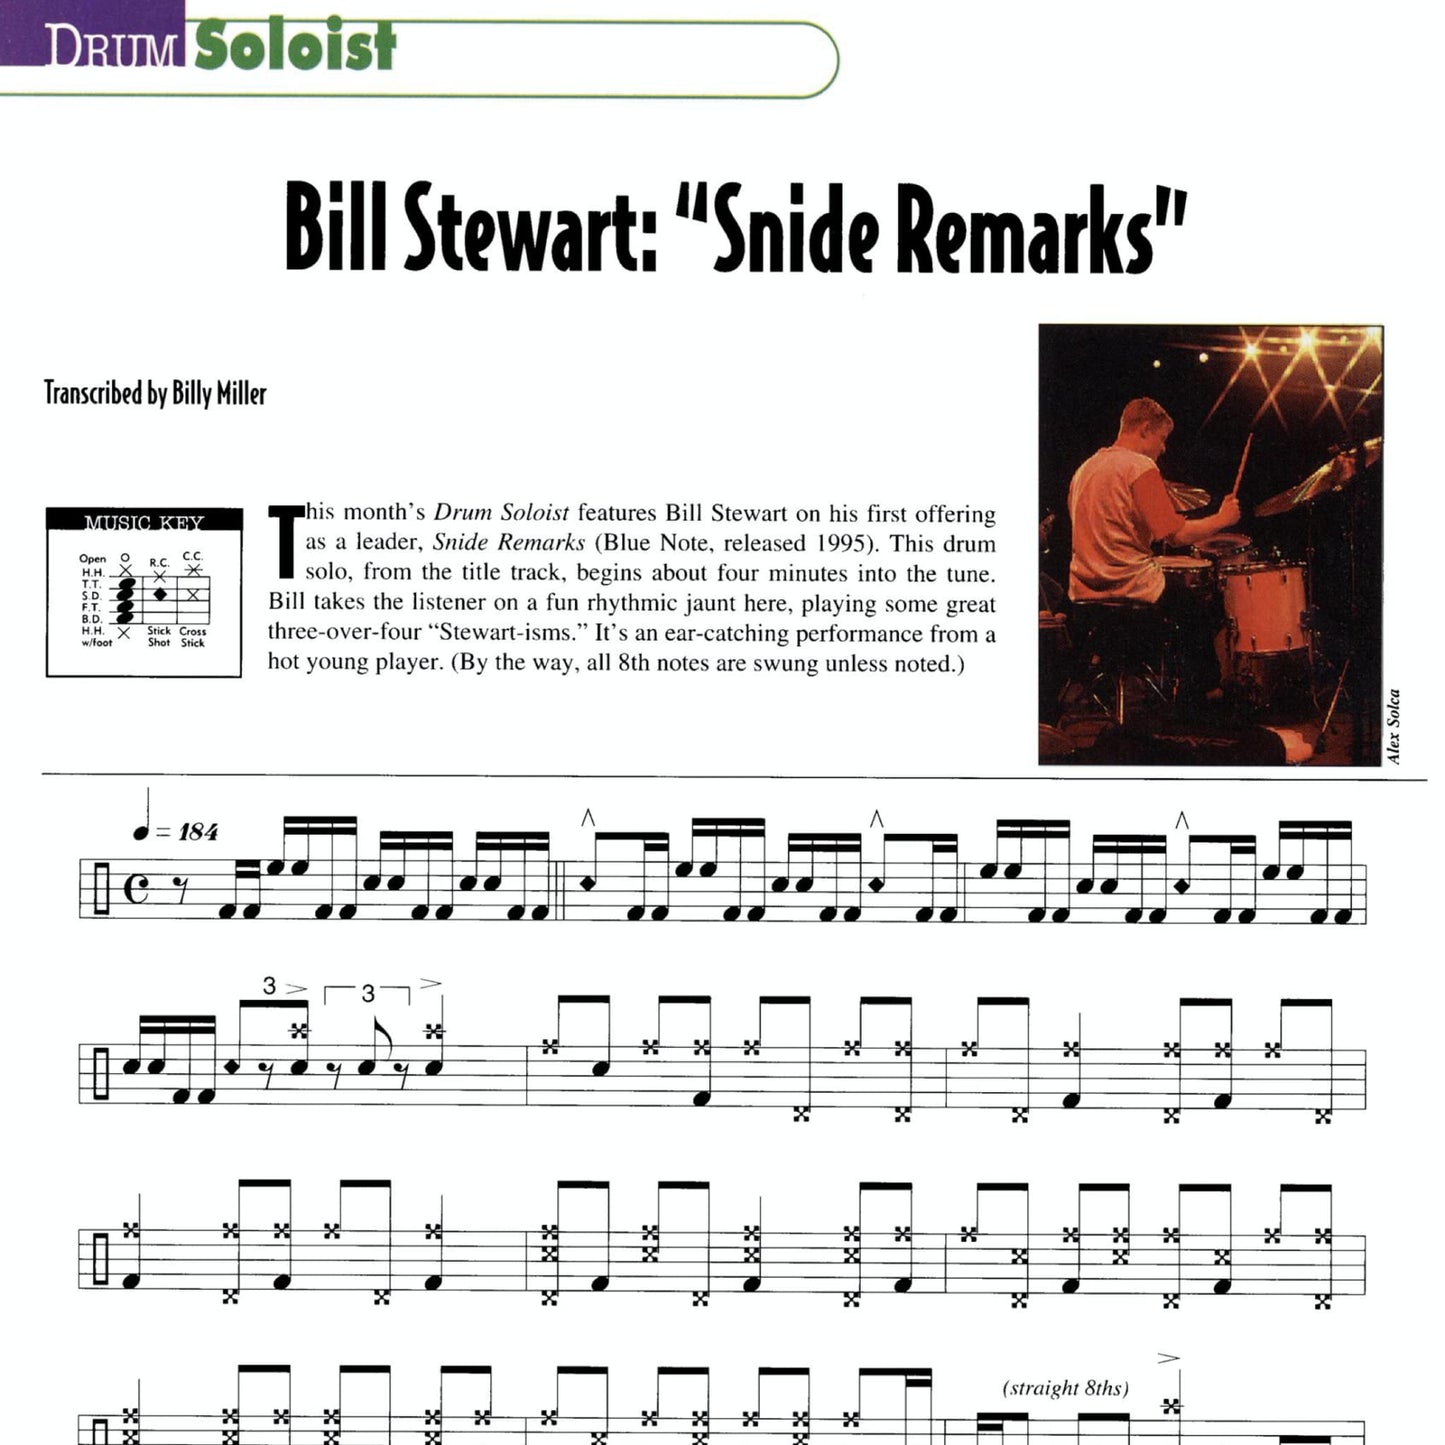 Bill Stewart's "Snide Remarks"